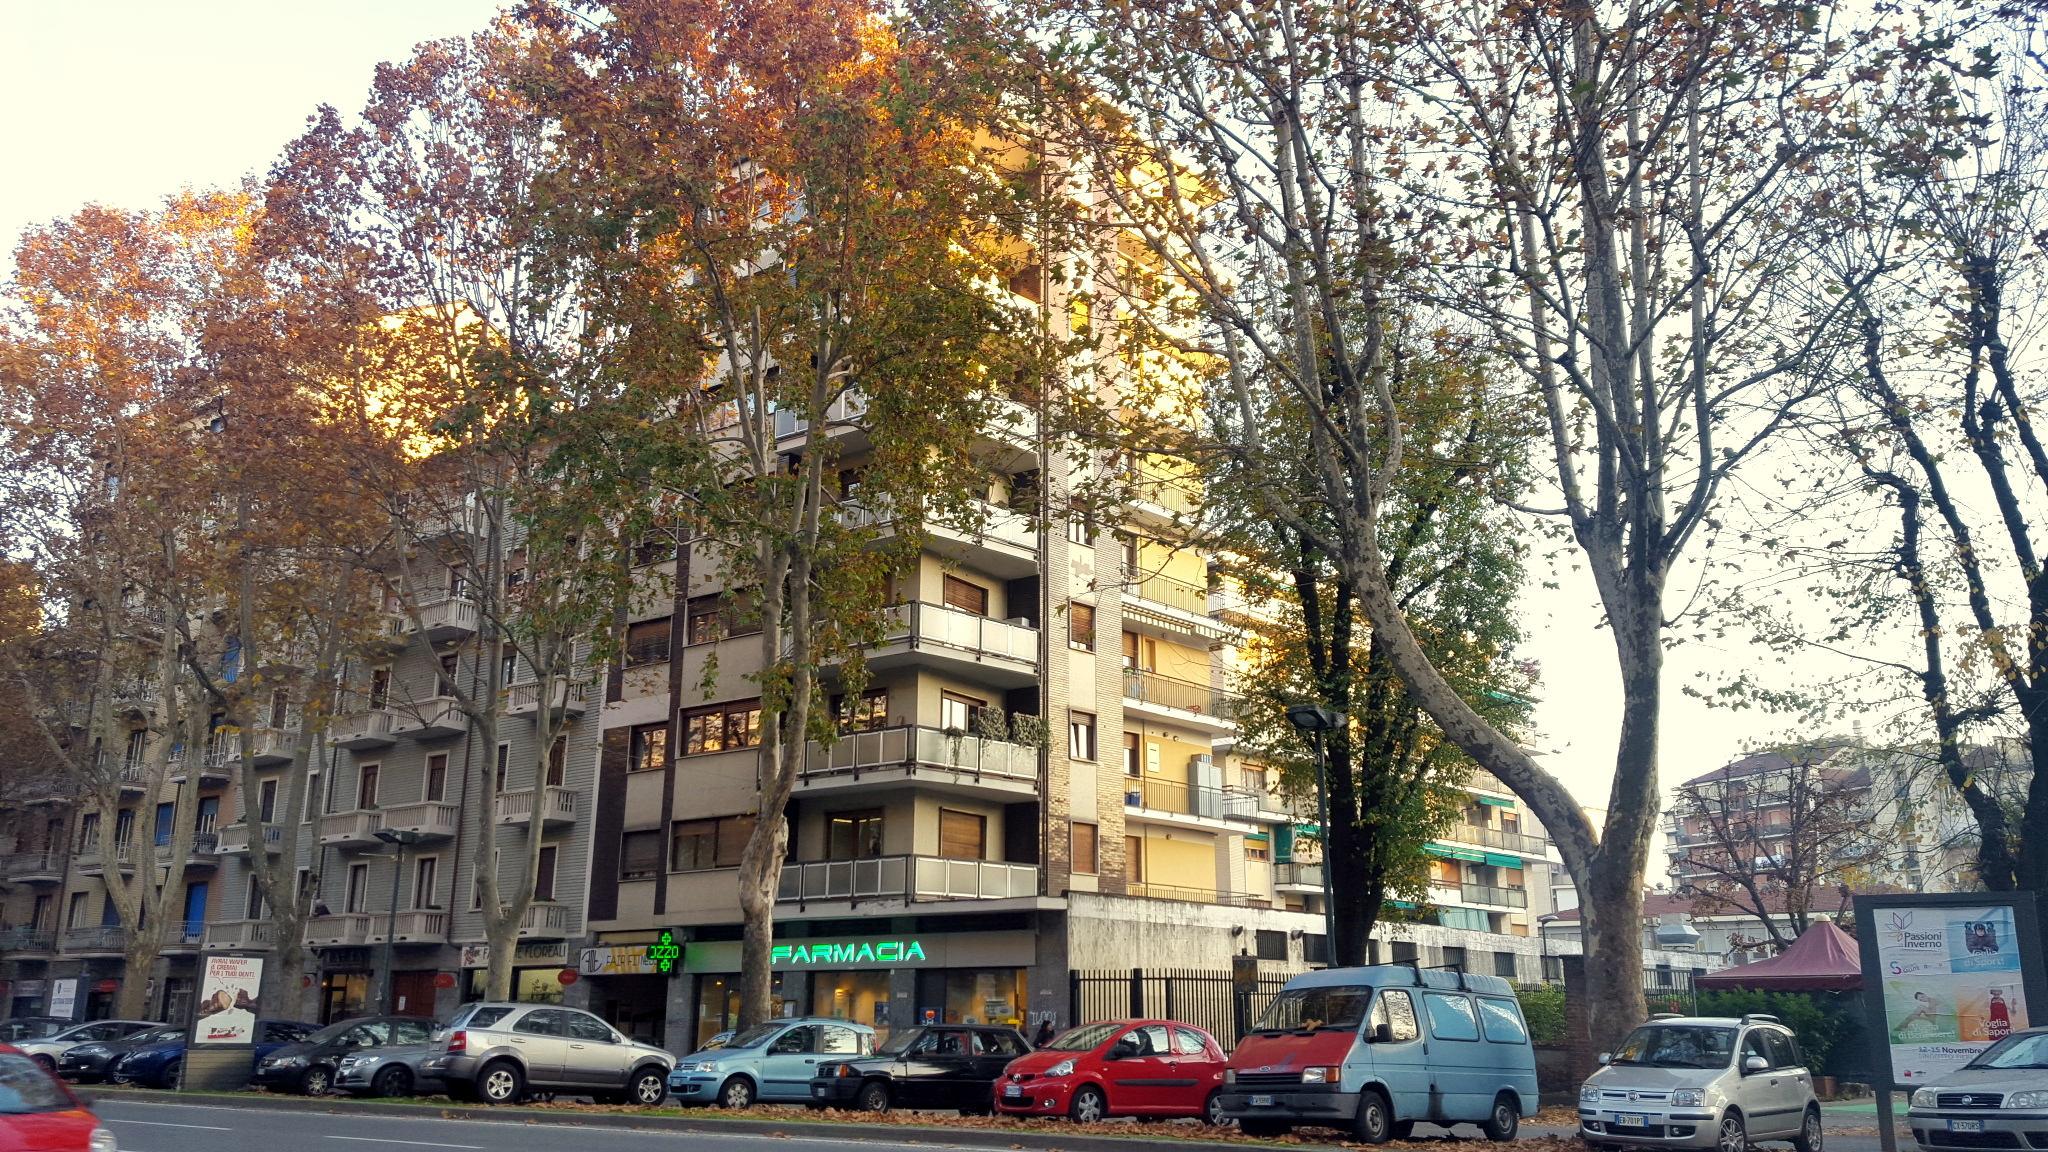 Torino, Pozzo Strada, Corso Francia